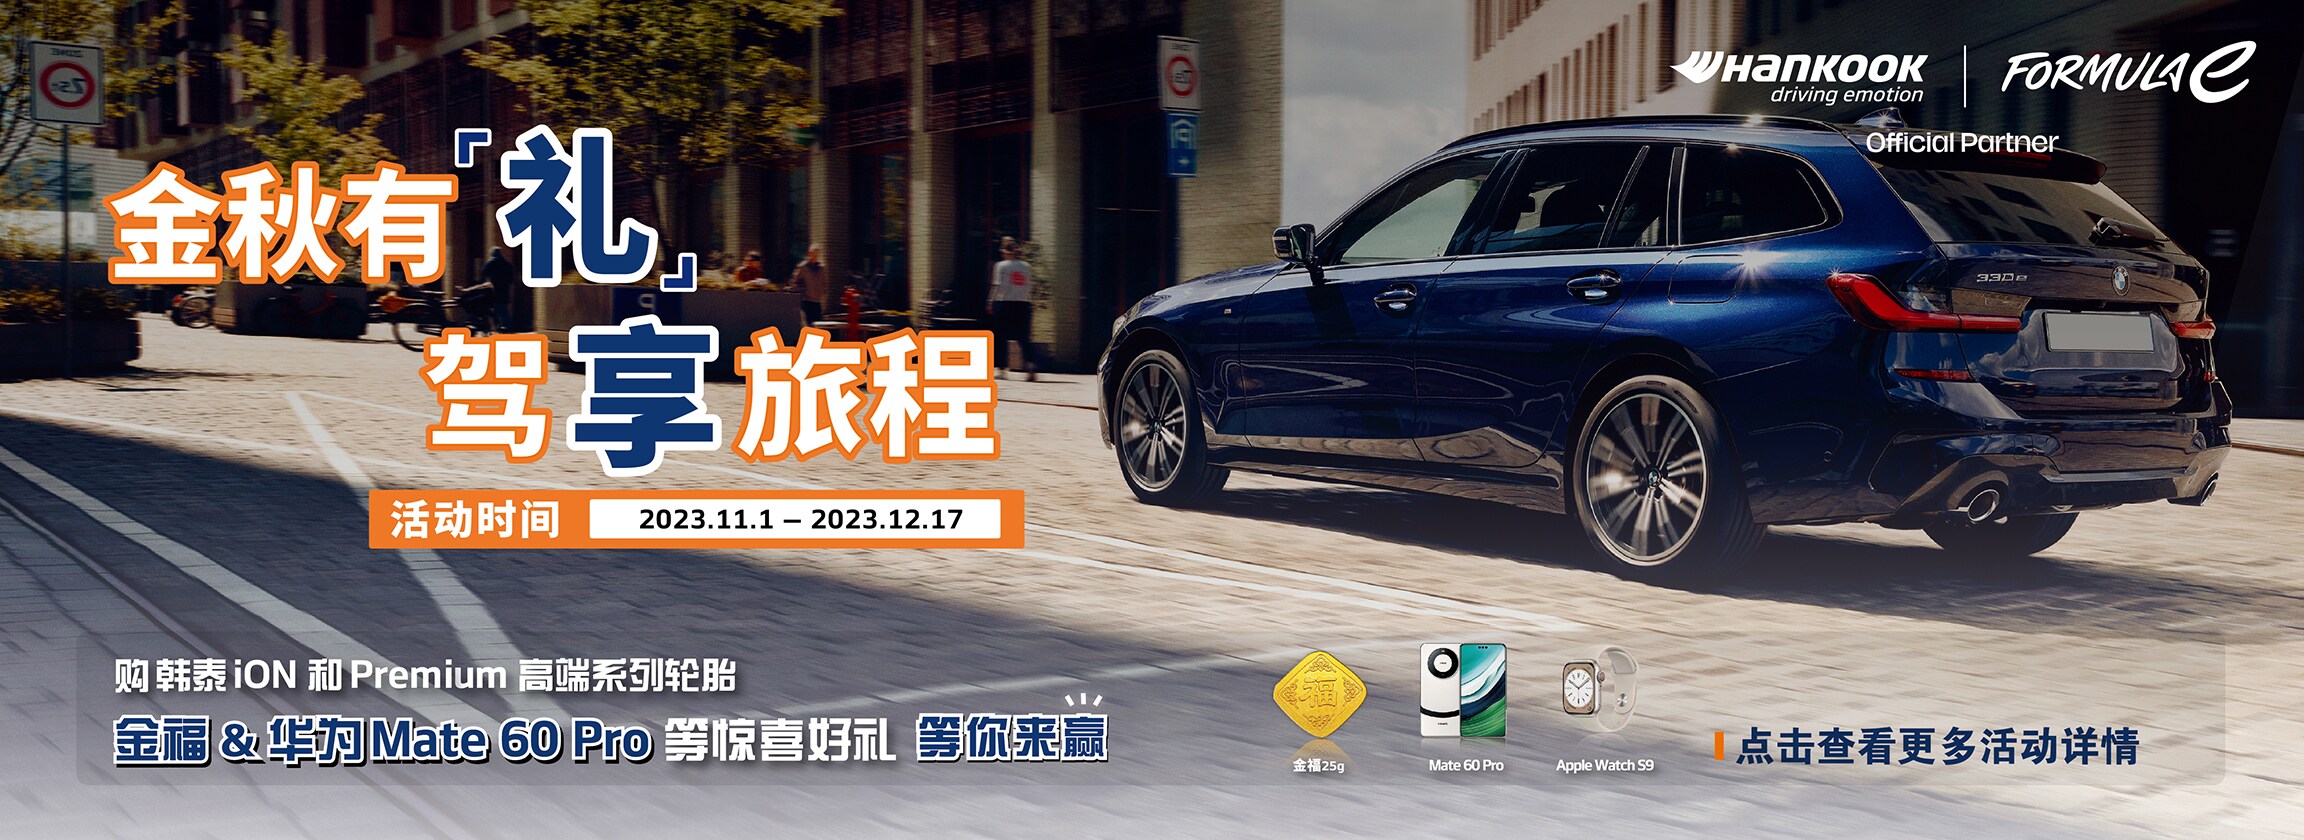 购韩泰iON和Premium高端系列轮胎  金福&华为Mate 60 Pro等惊喜好礼等你来赢